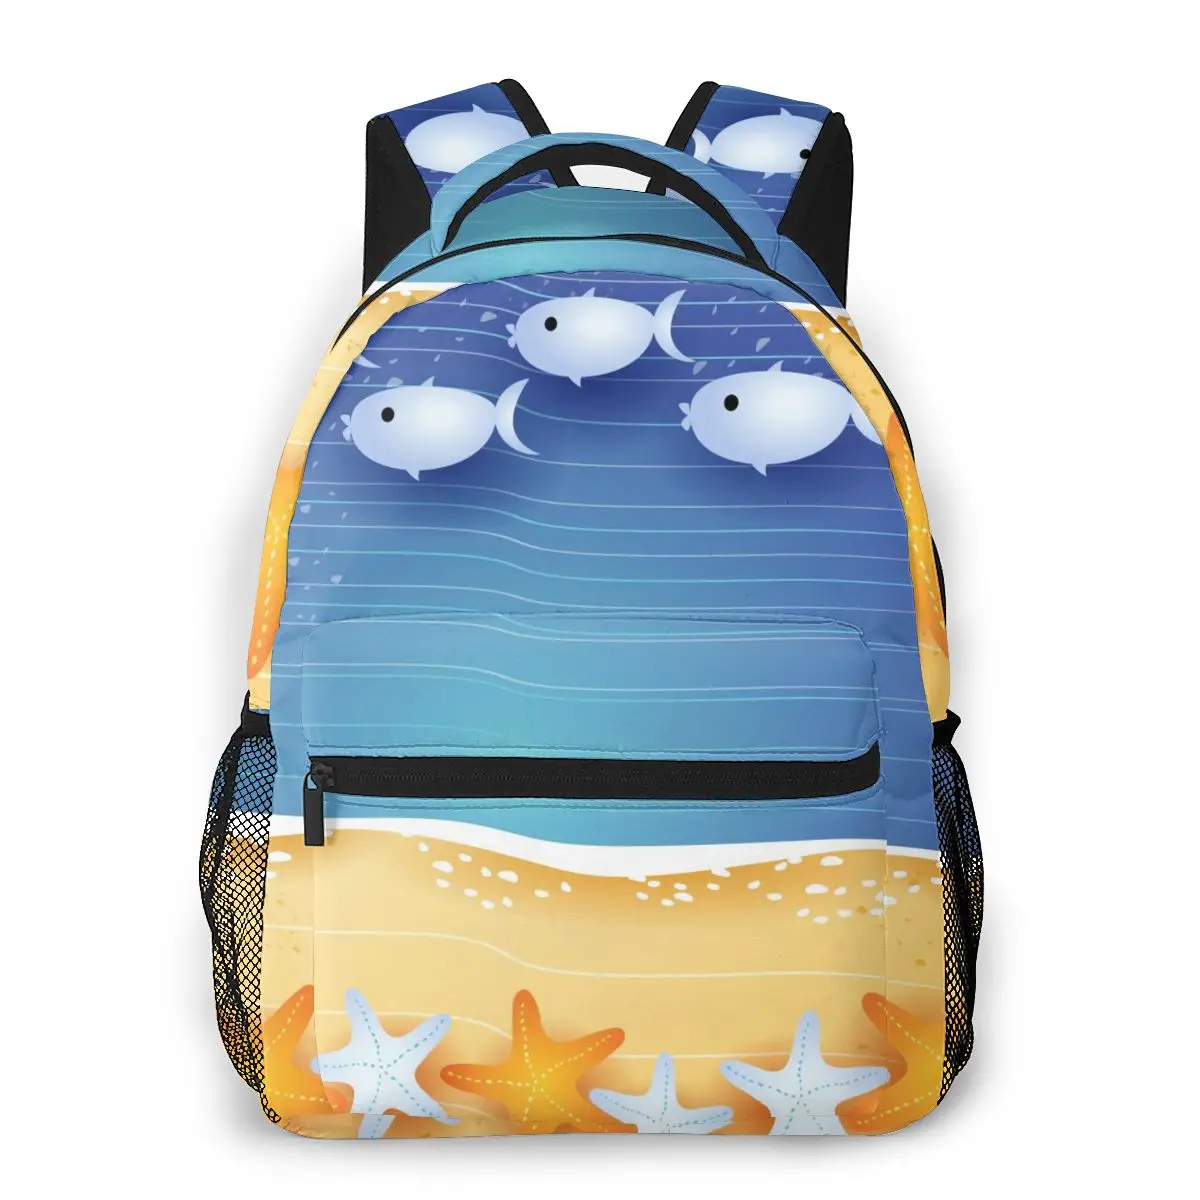 

Рюкзак OLN Женский на плечо, милый пляжный ранец для девочек-подростков с принтом звезд и рыб, Женский школьный портфель